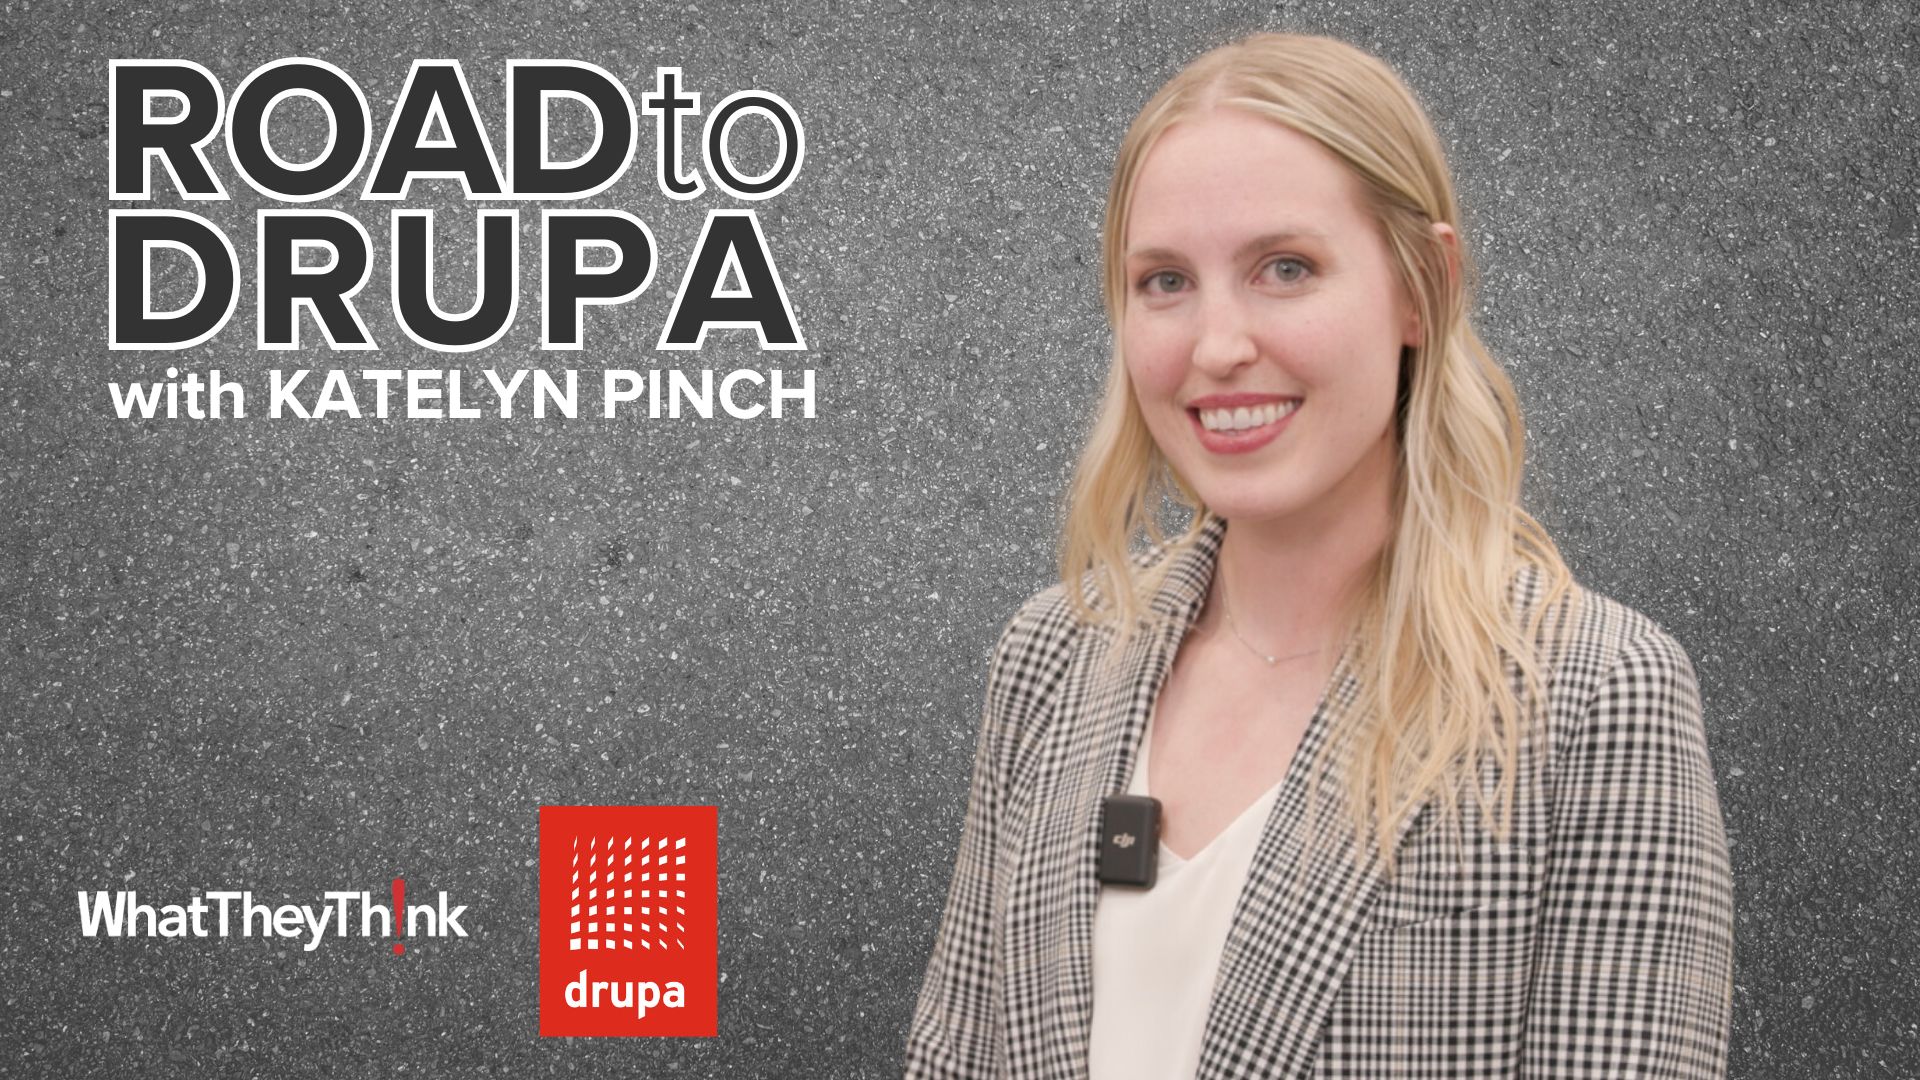 Road to drupa: Standard Finishing's Katelyn Pinch